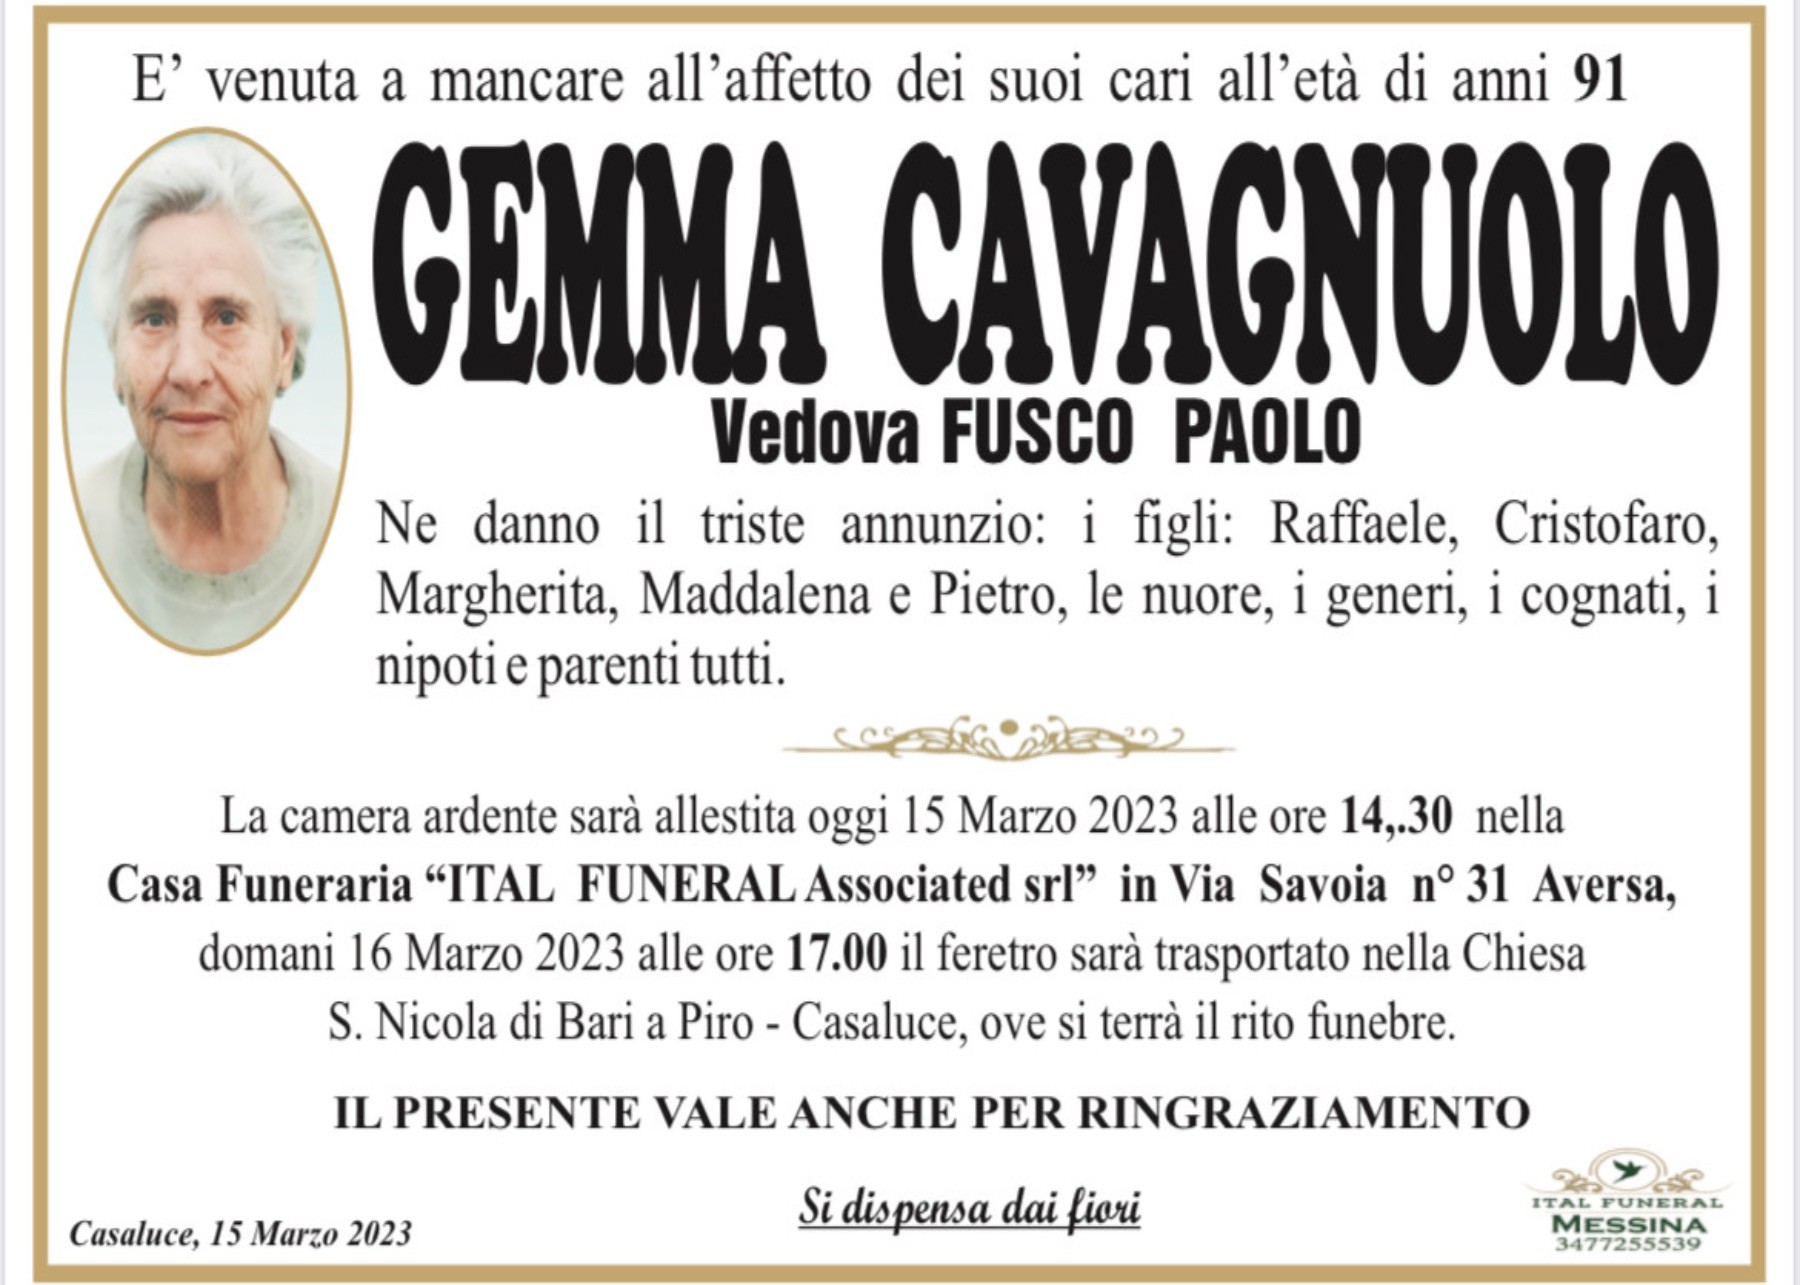 Gemma Cavagnuolo